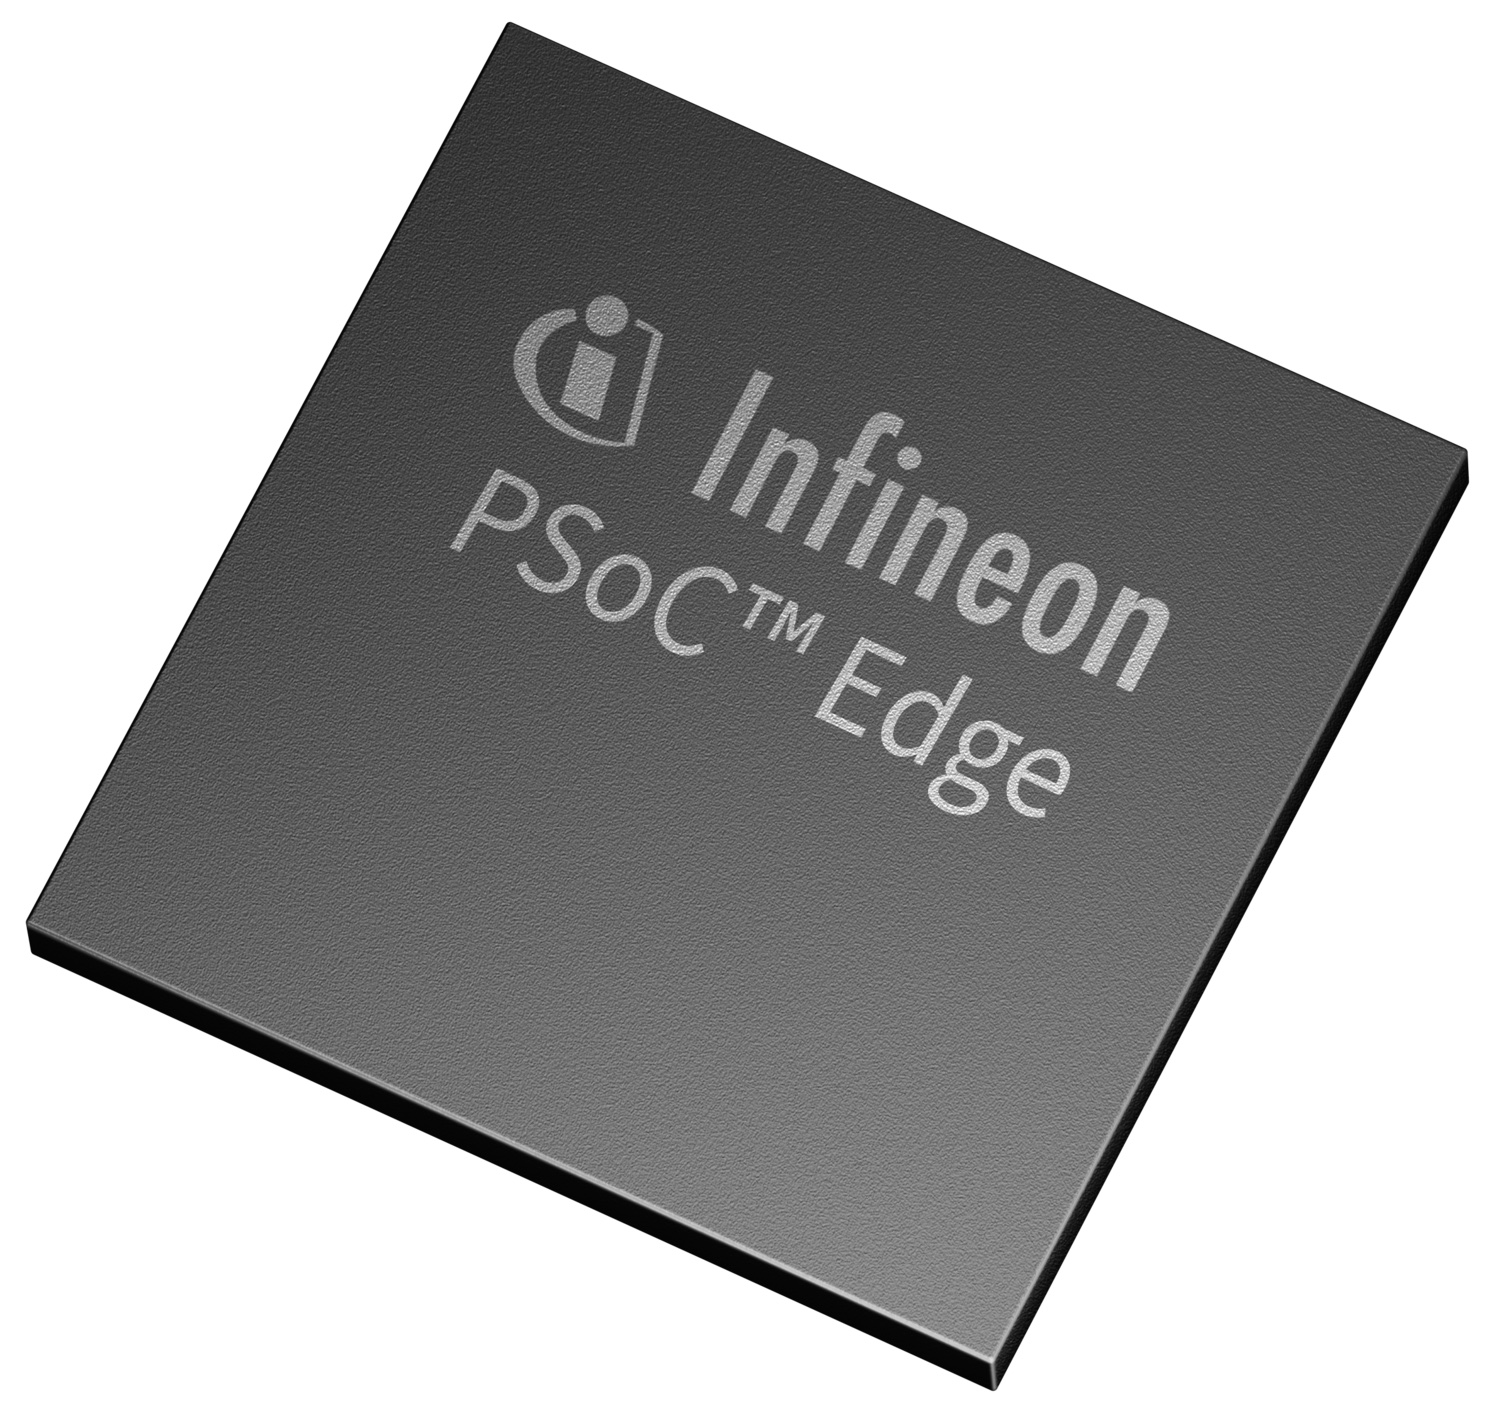 英飞凌推出全新PSoC Edge产品系列,扩展微控制器产品组合